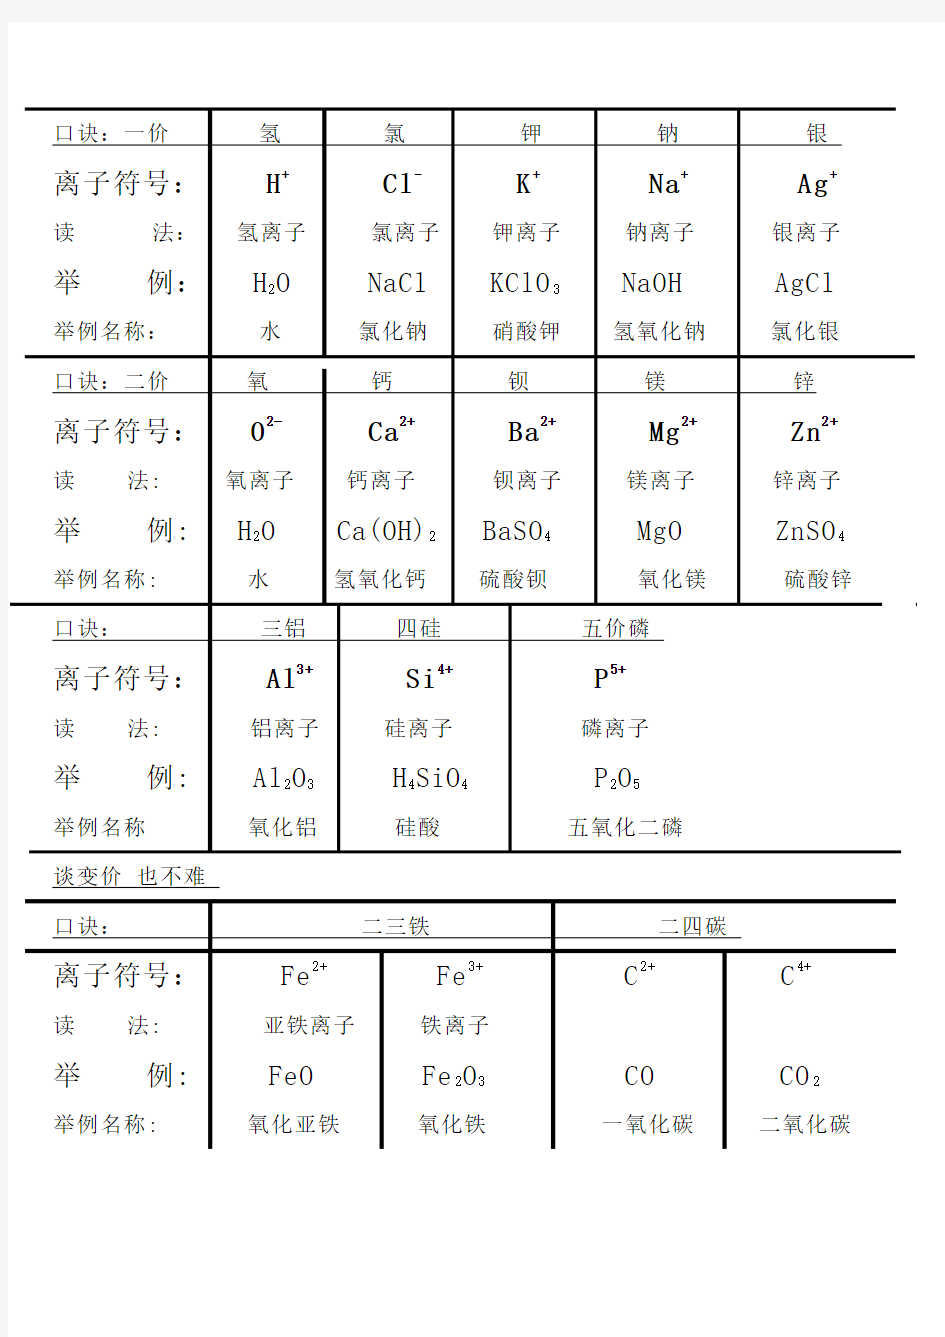 初中常见离子符号及实例